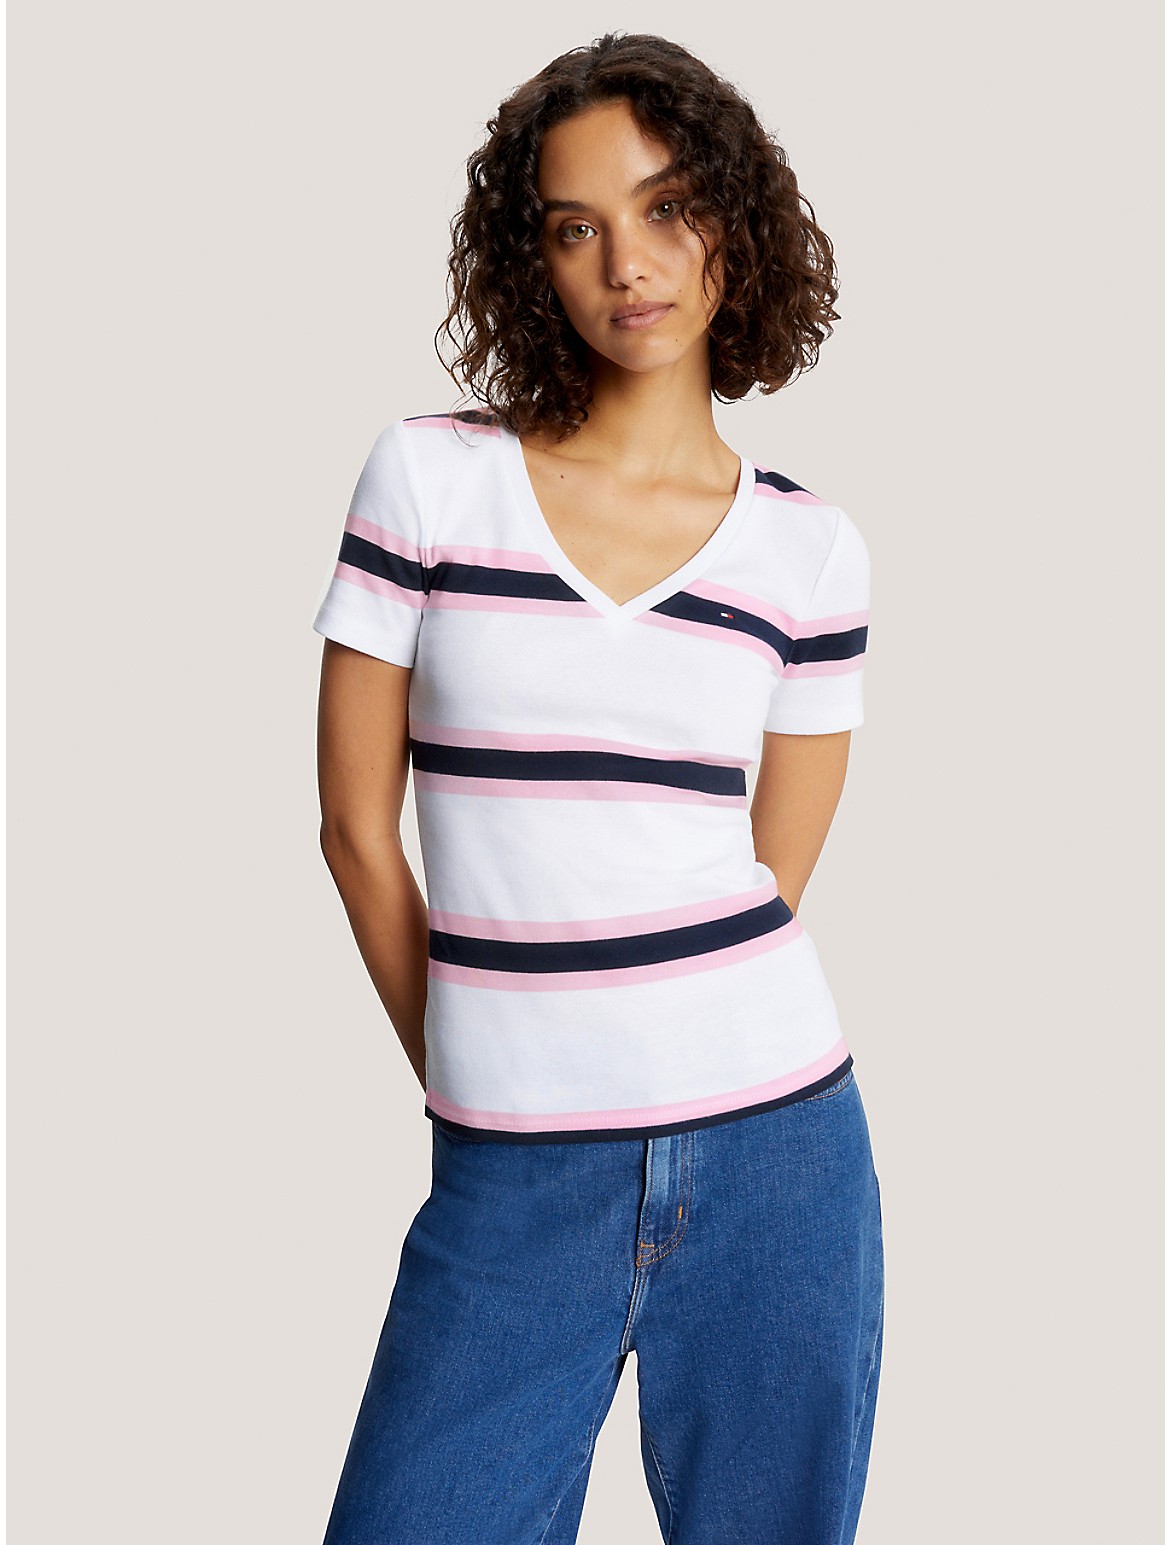 Tommy Hilfiger Women's Slim Fit Favorite Stripe V-Neck T-Shirt